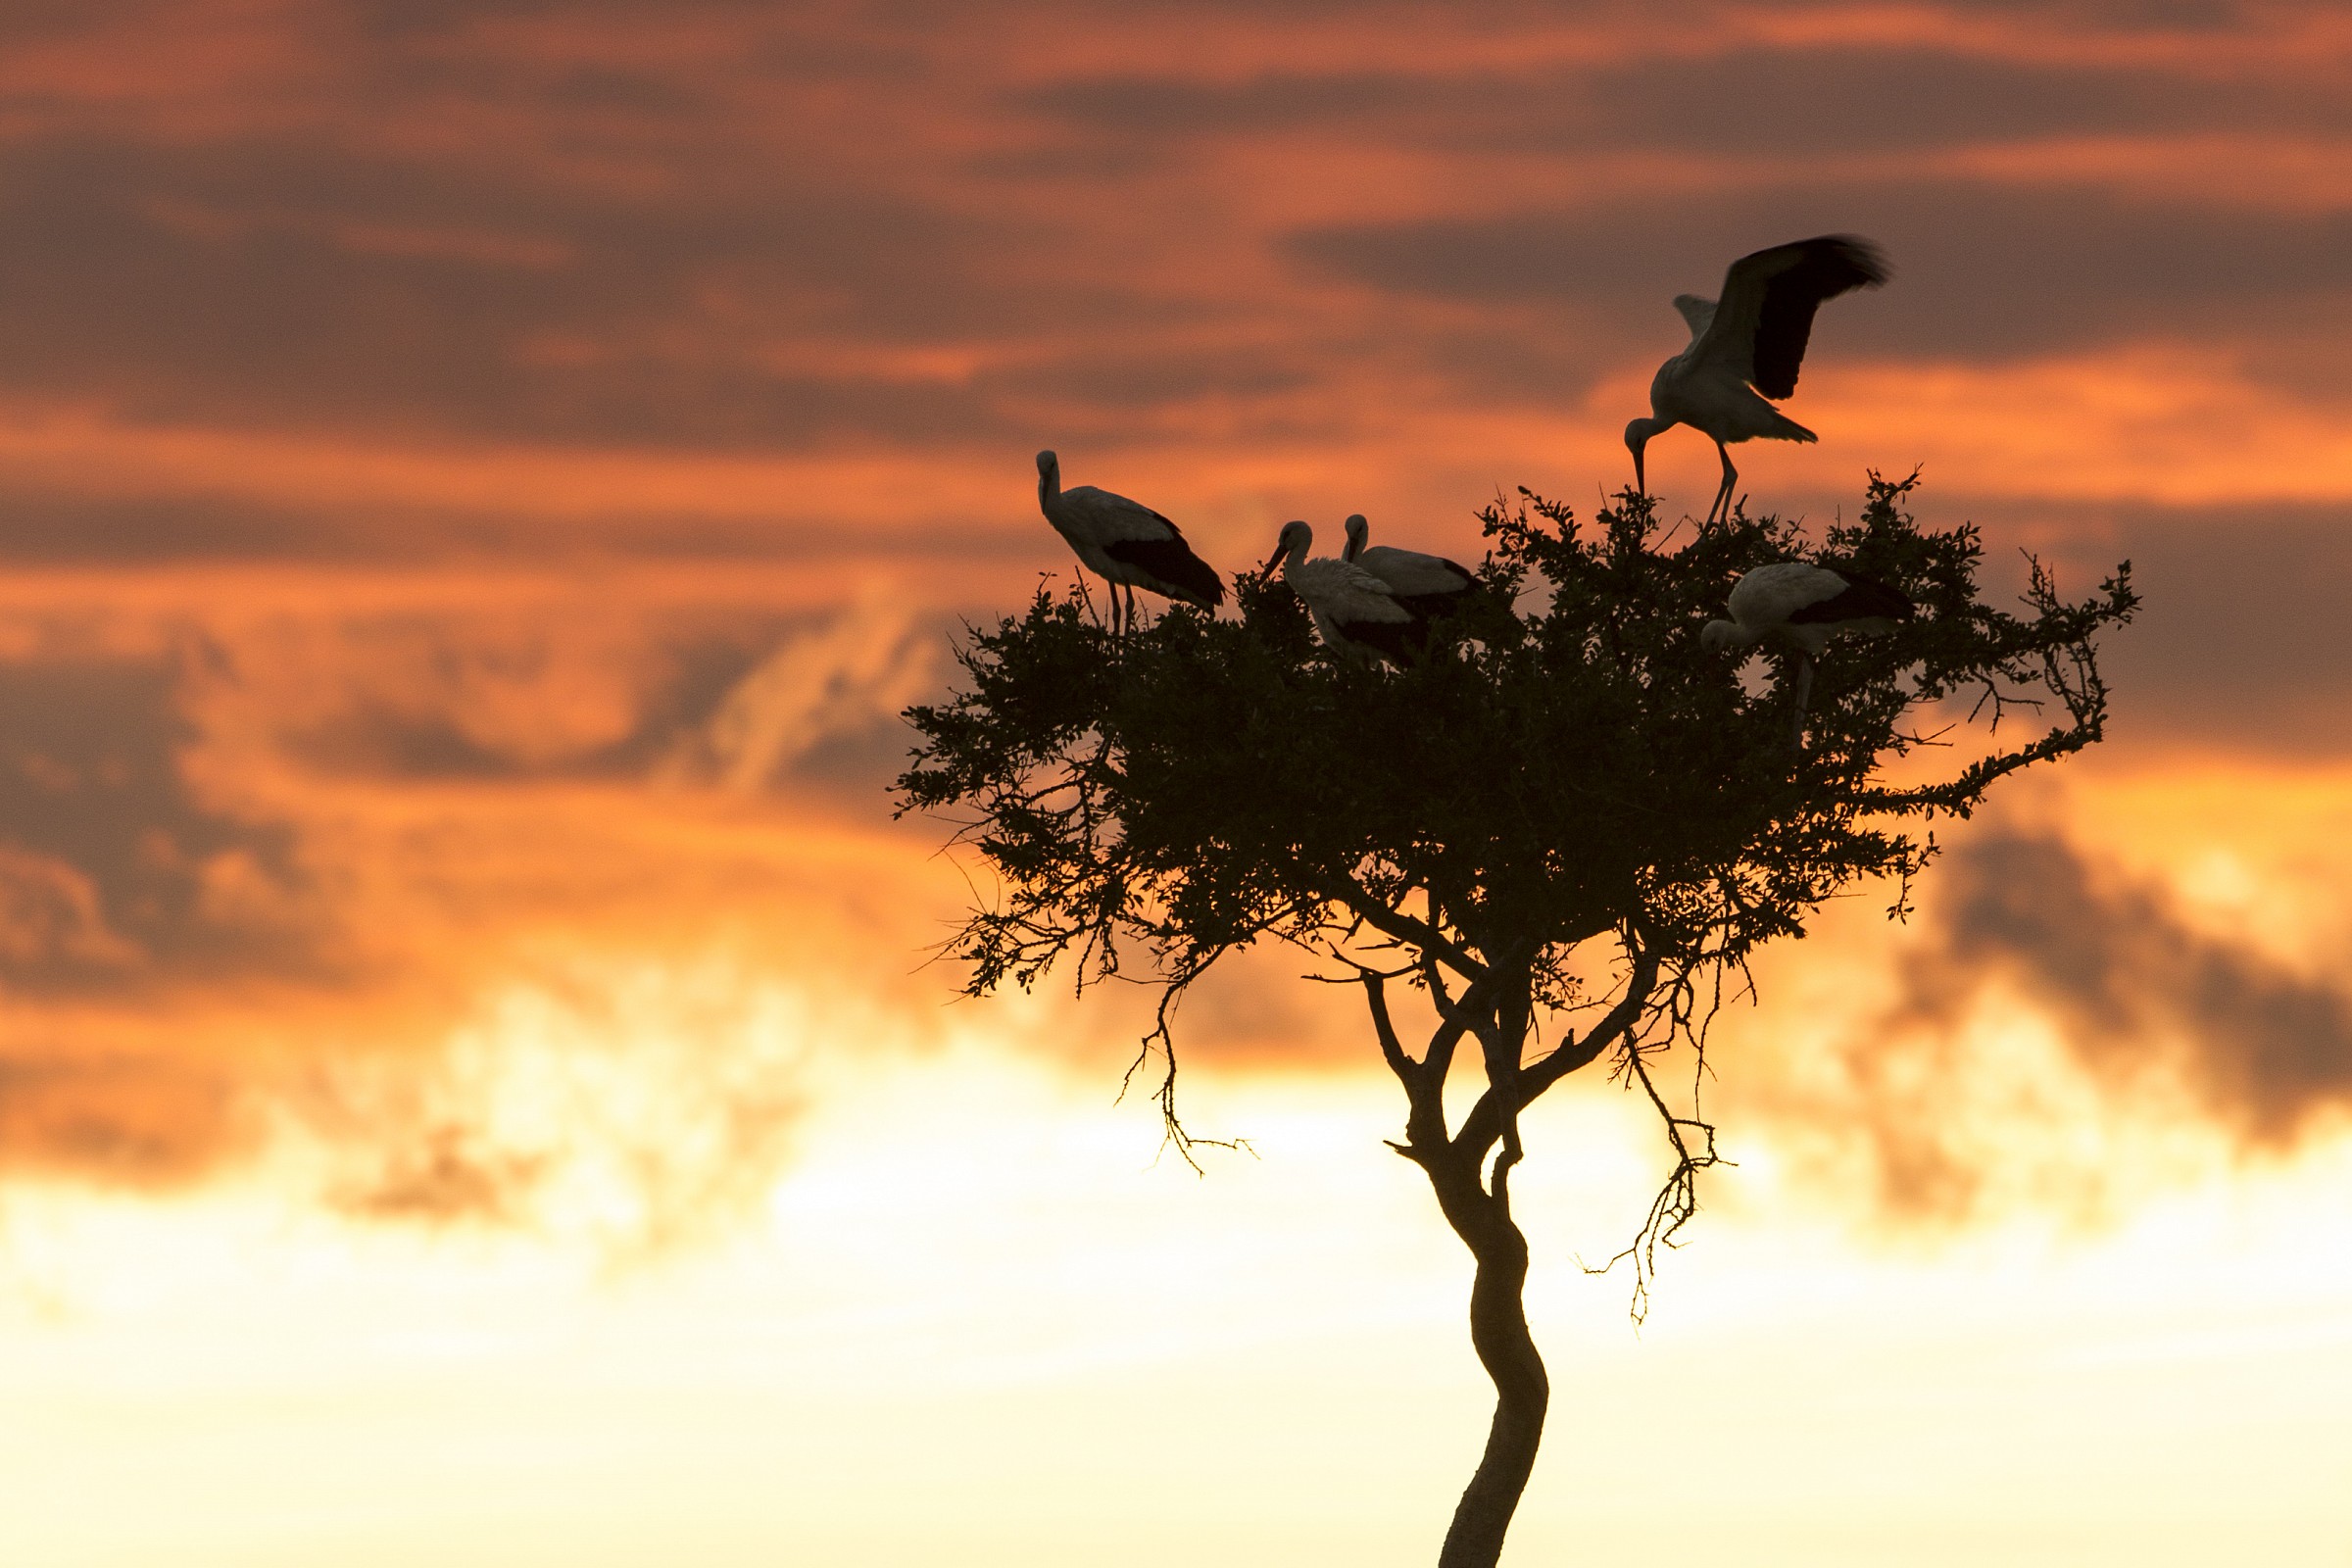 Storks at Mara...